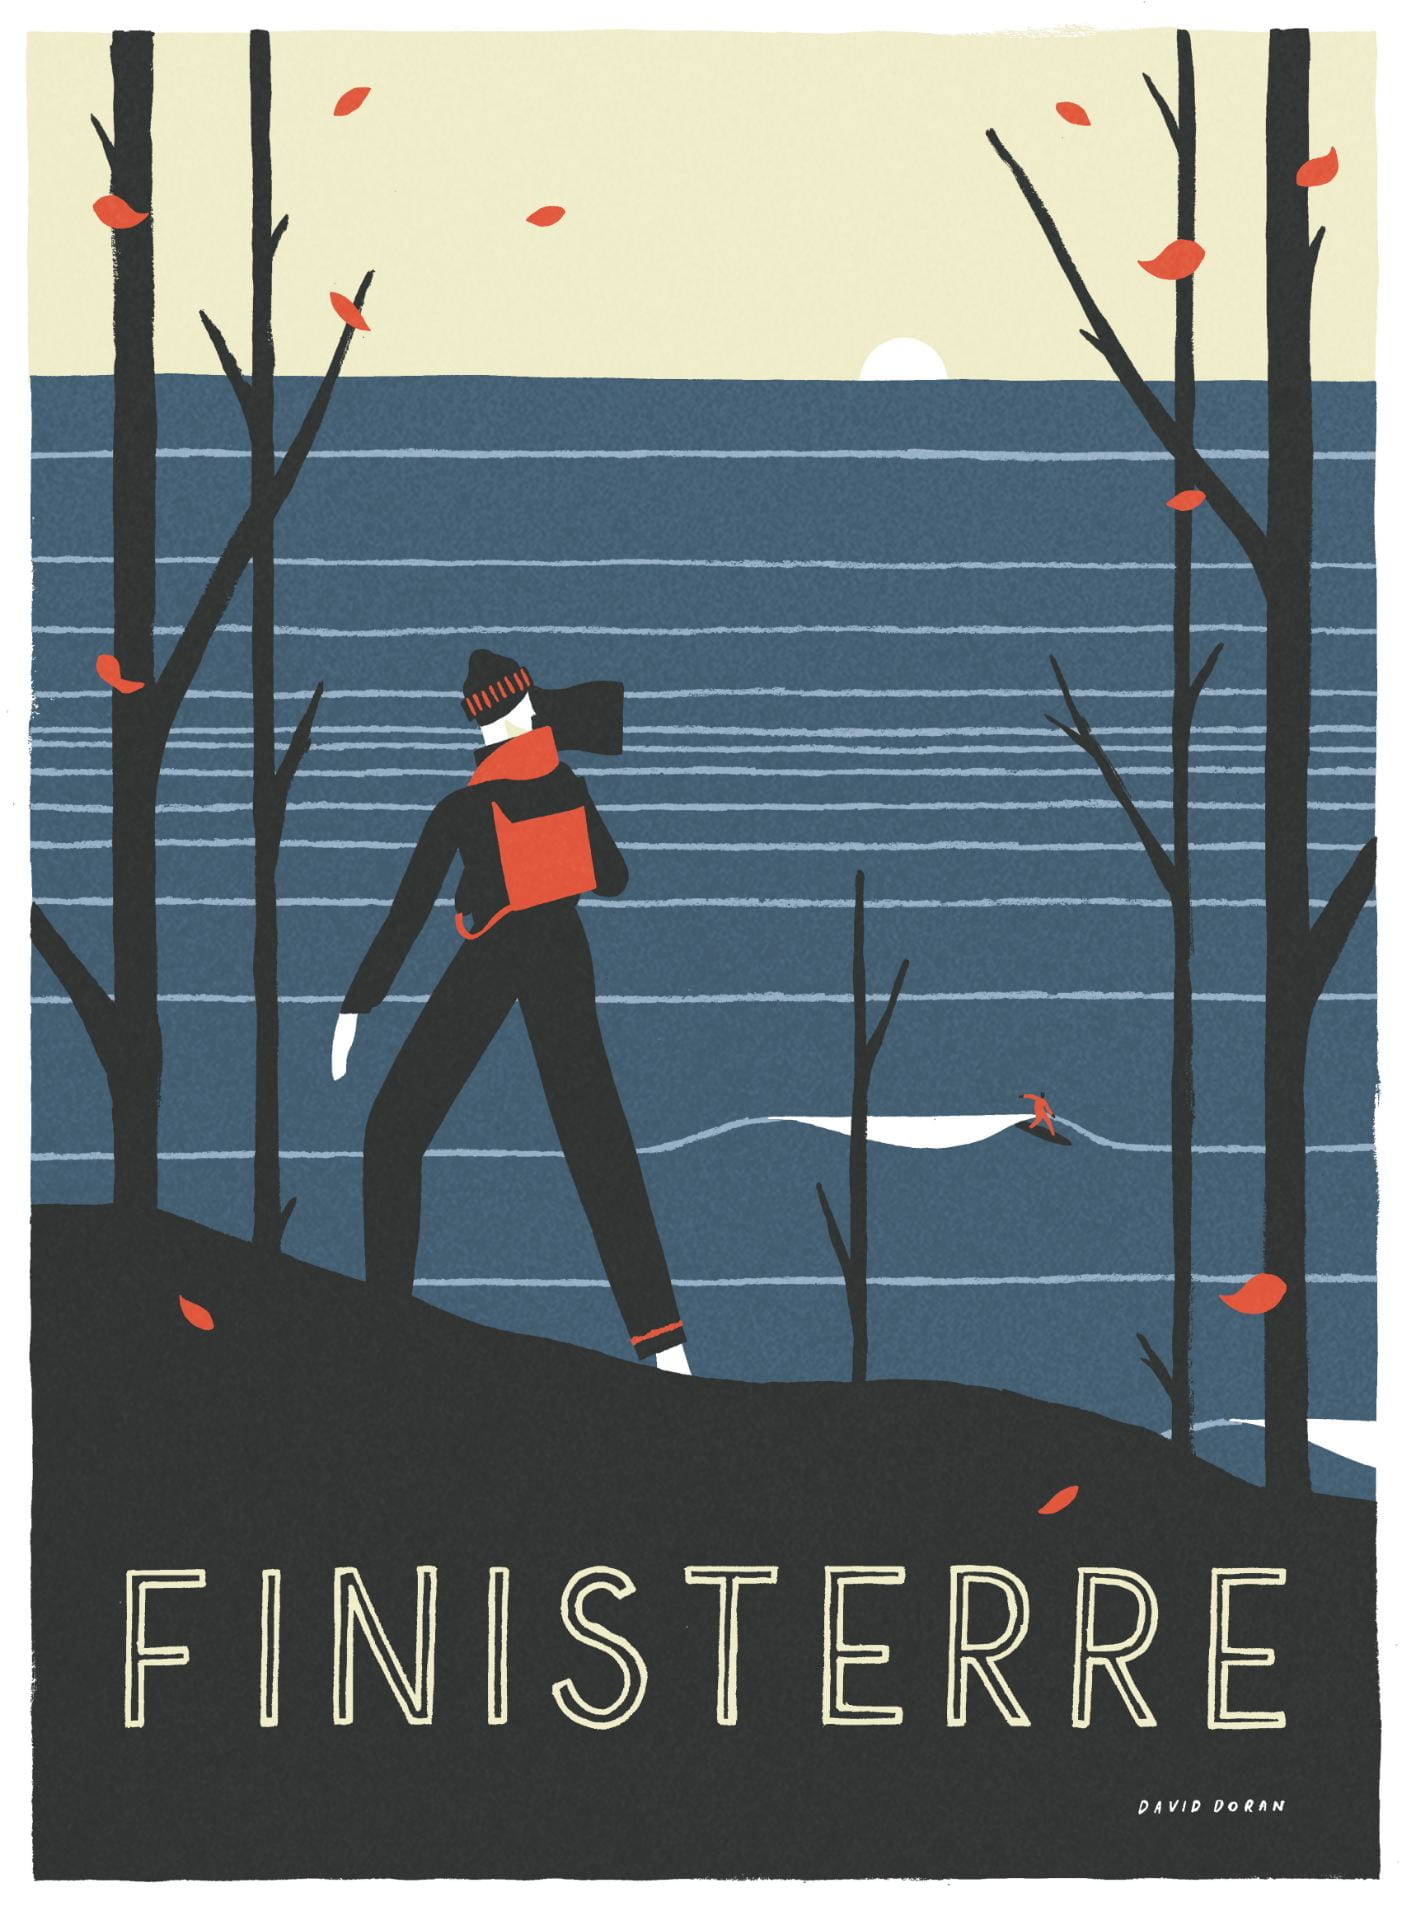 ‘Finisterre’ Campaign Illustration